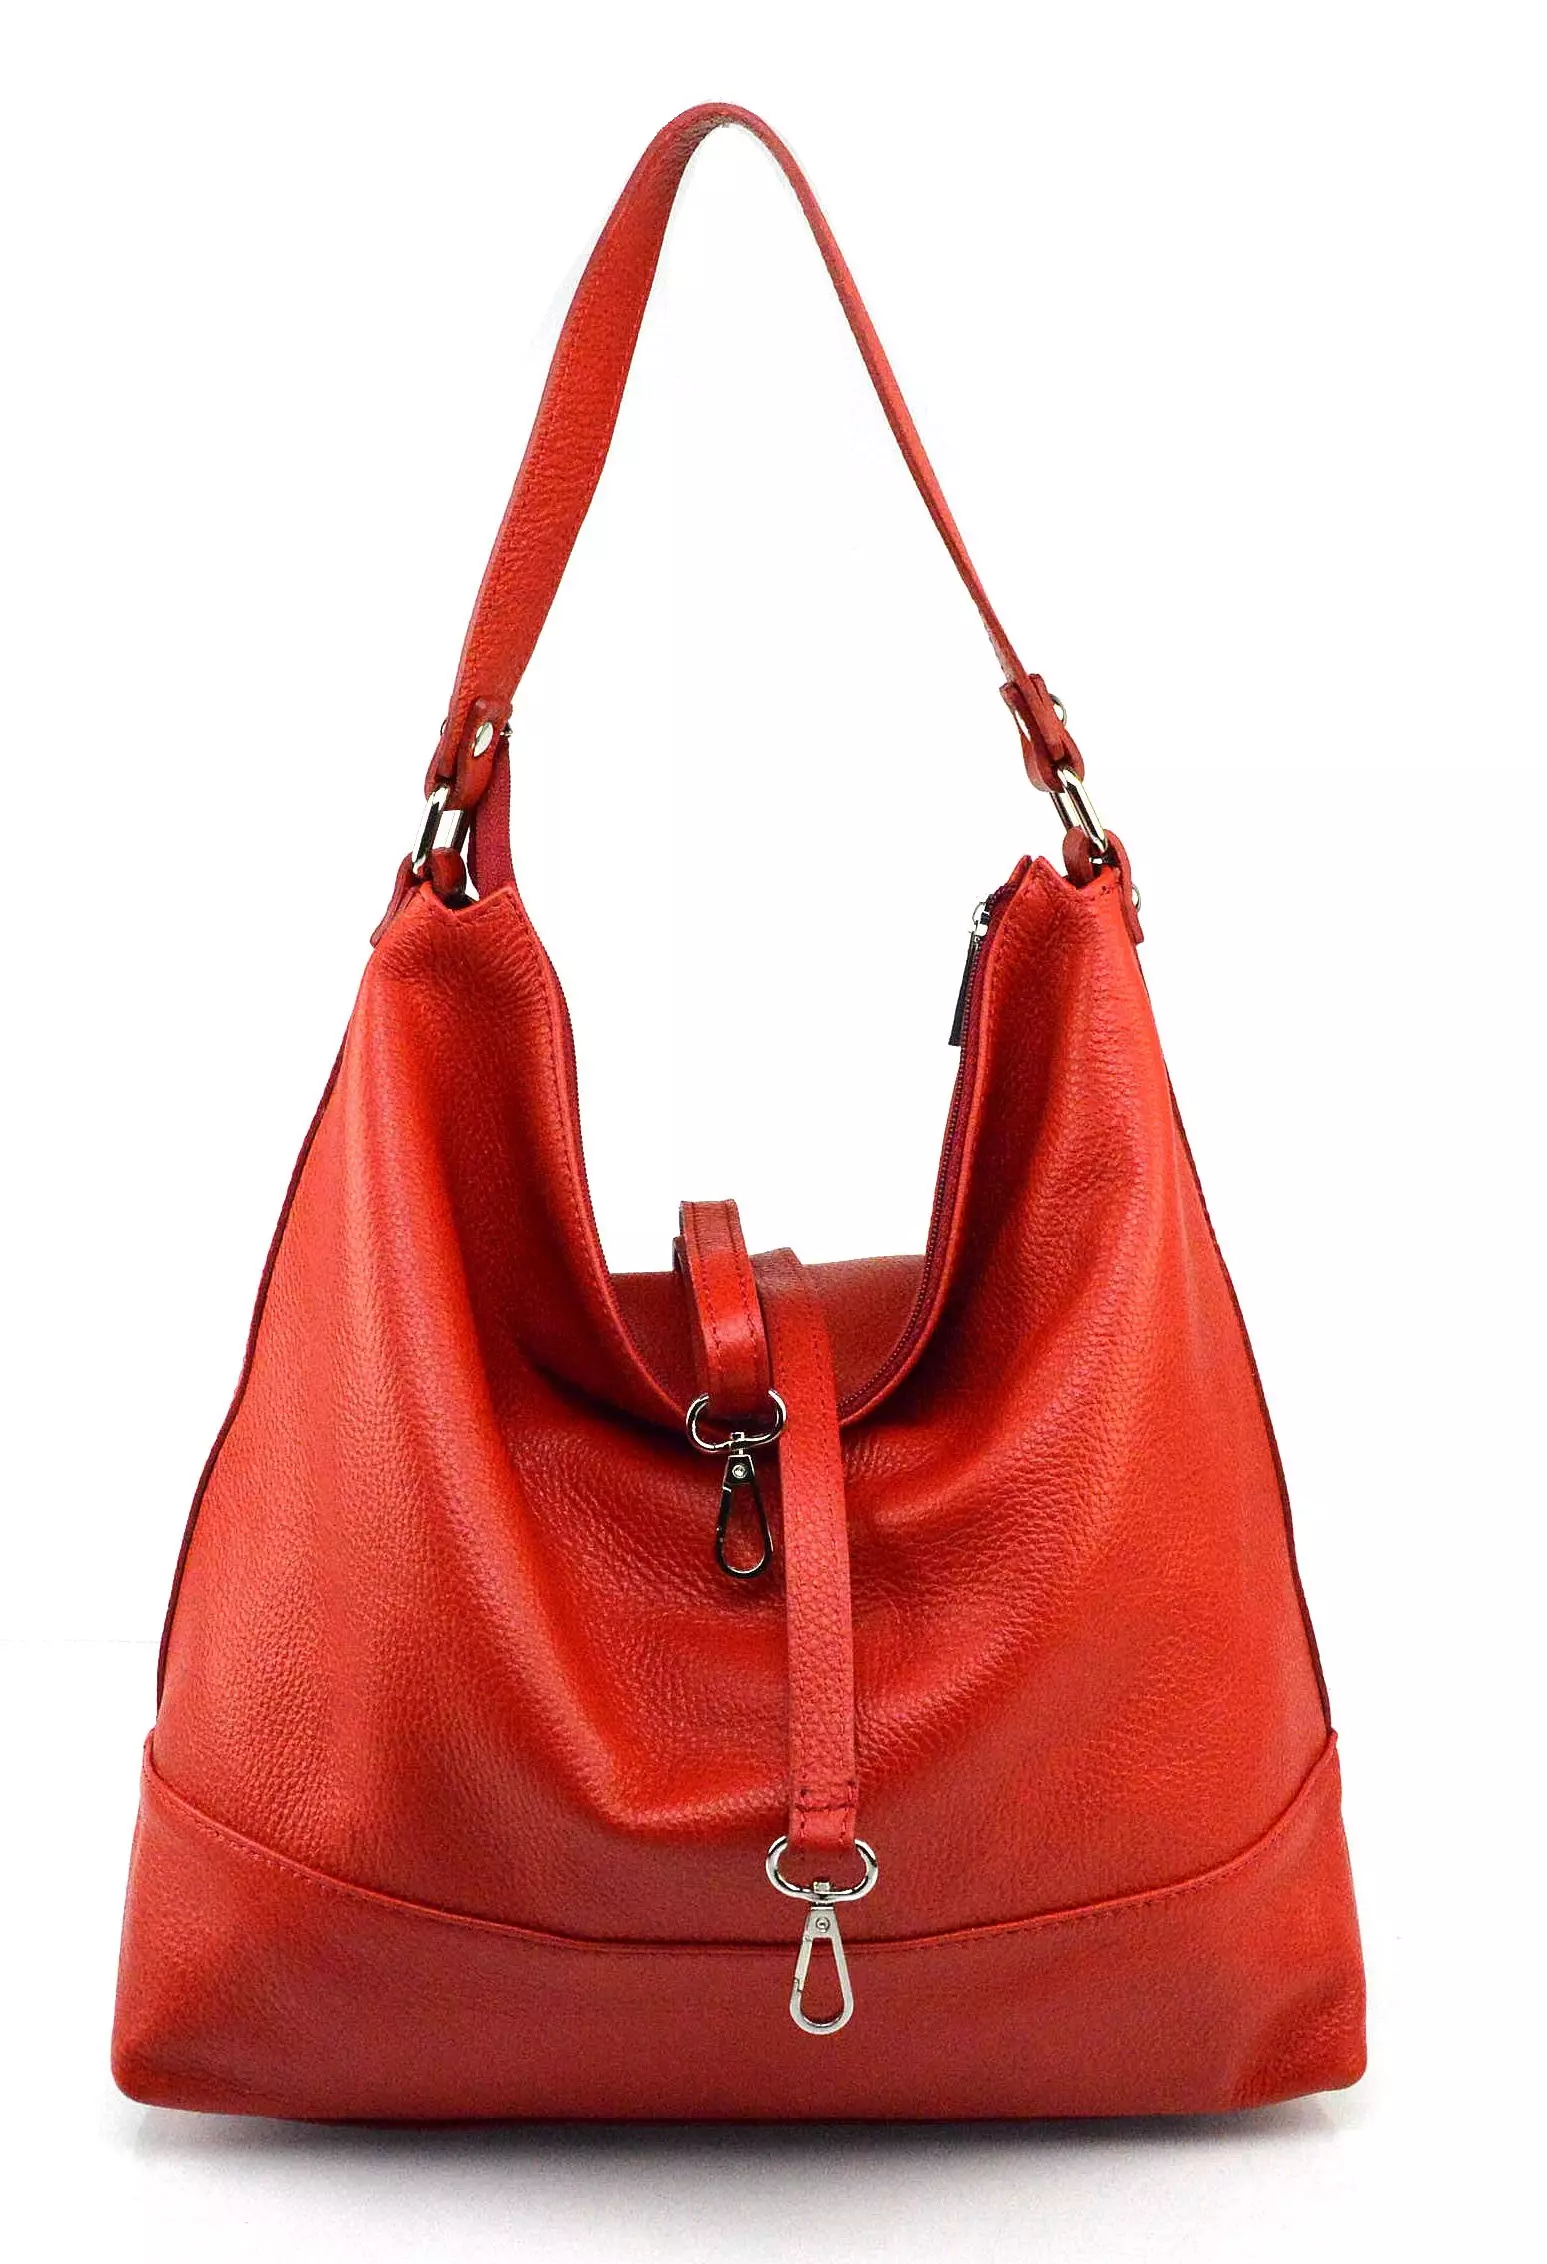 Kabelkyzesveta - luxusná červená kabelka